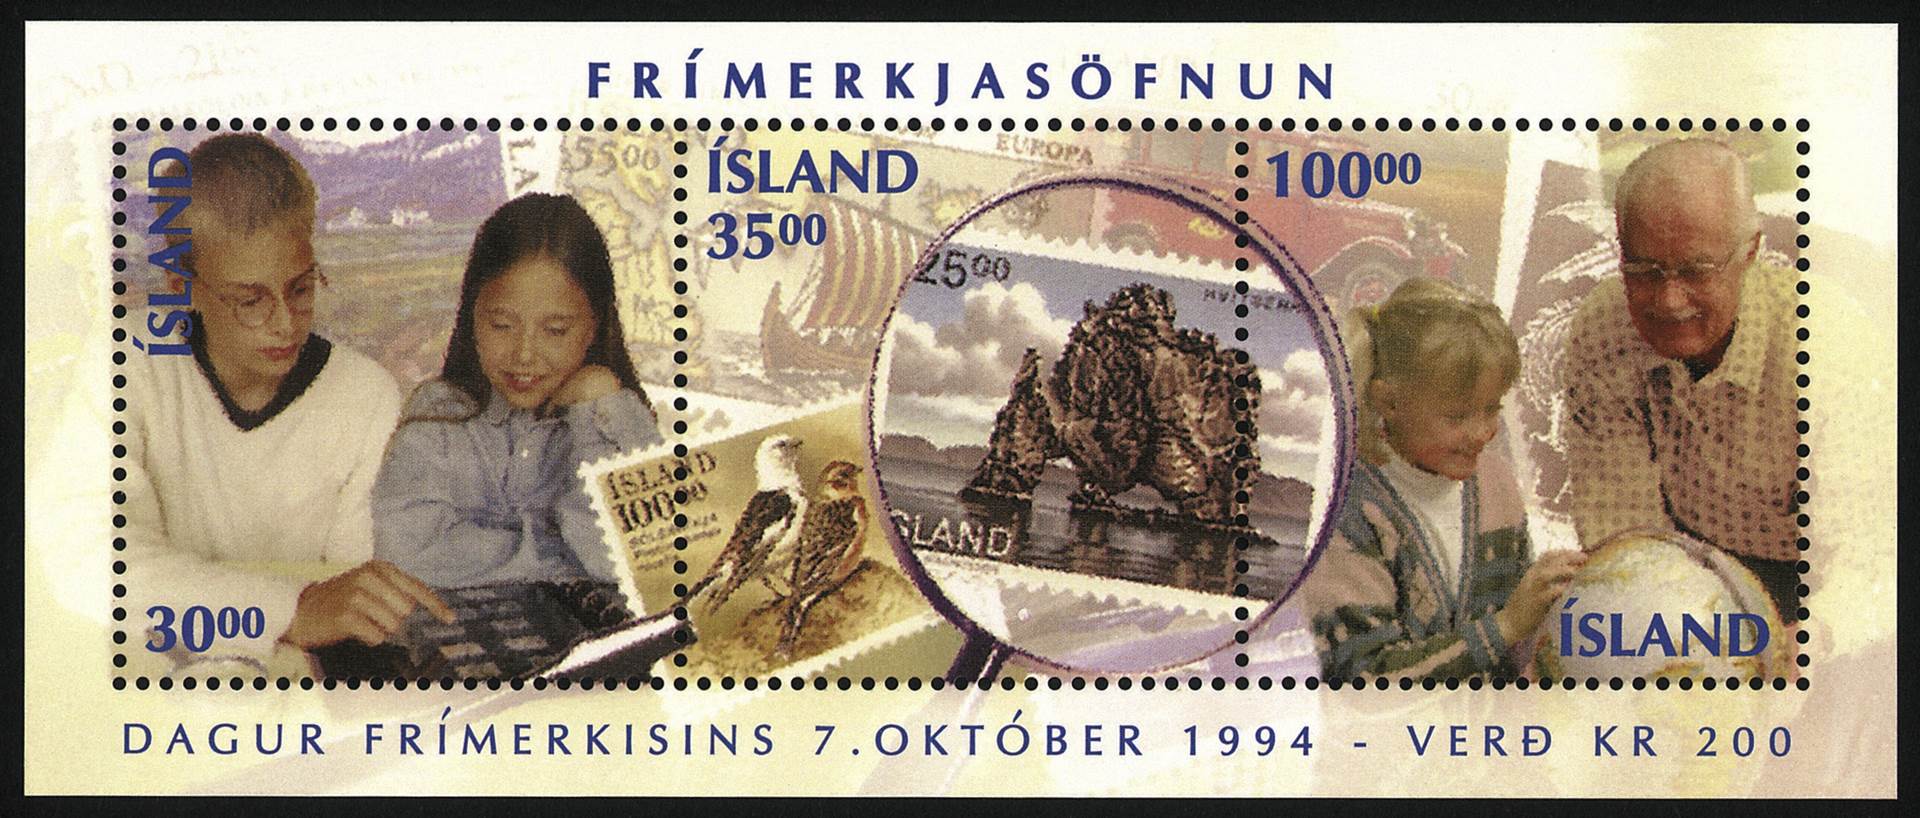 Frímerki í tilefni Dags frímerksins árið 1994 - mynd